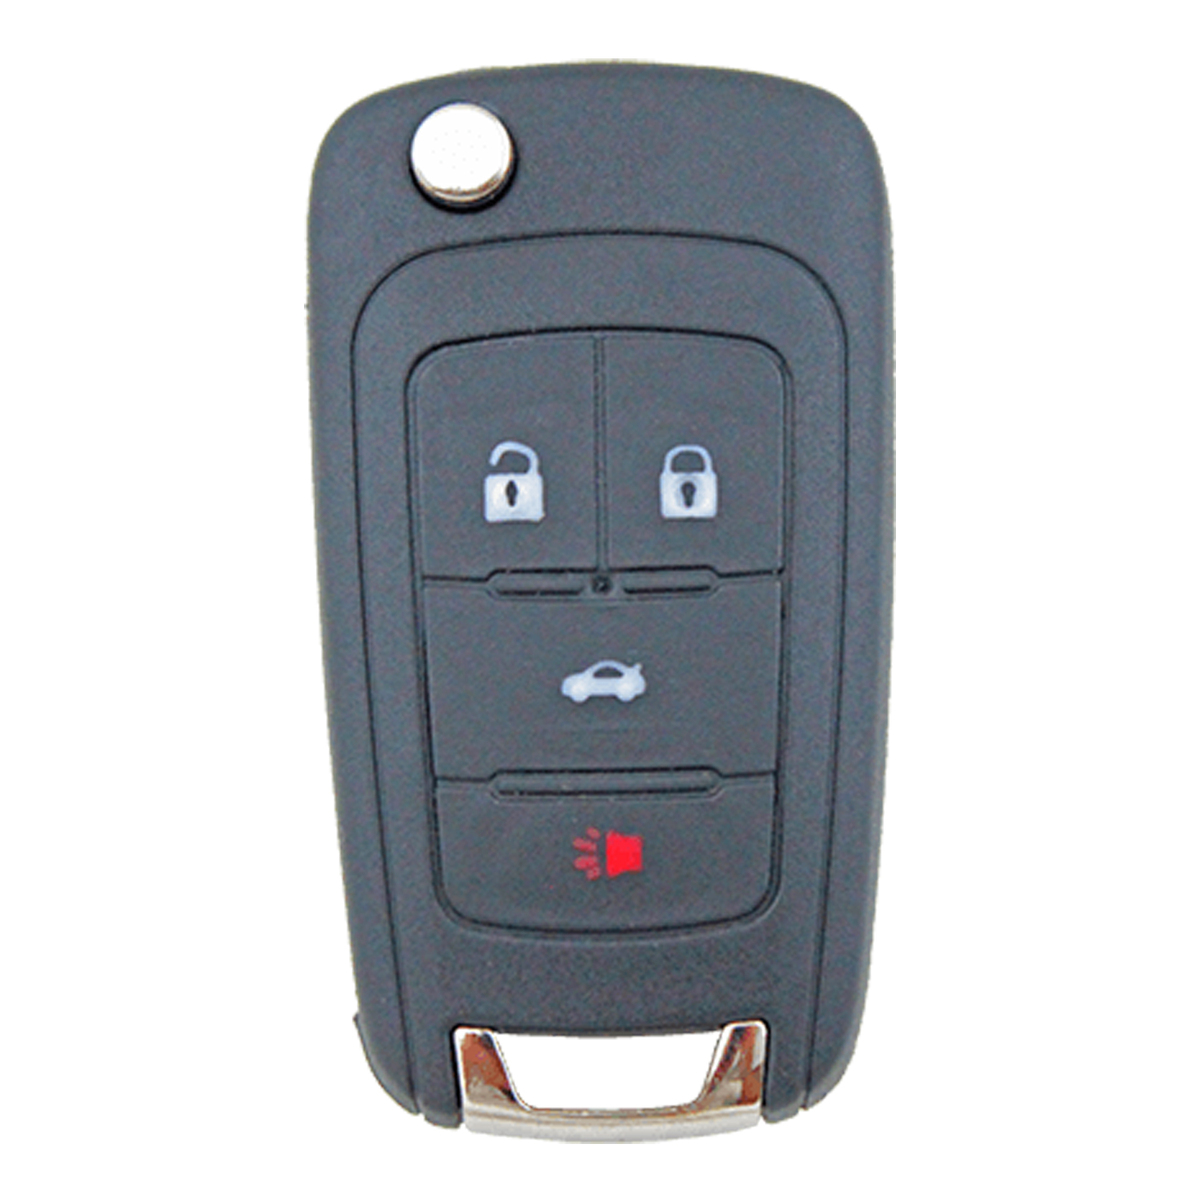 Genuine Holden 4 button remote flip Key 433MHz to suit VF